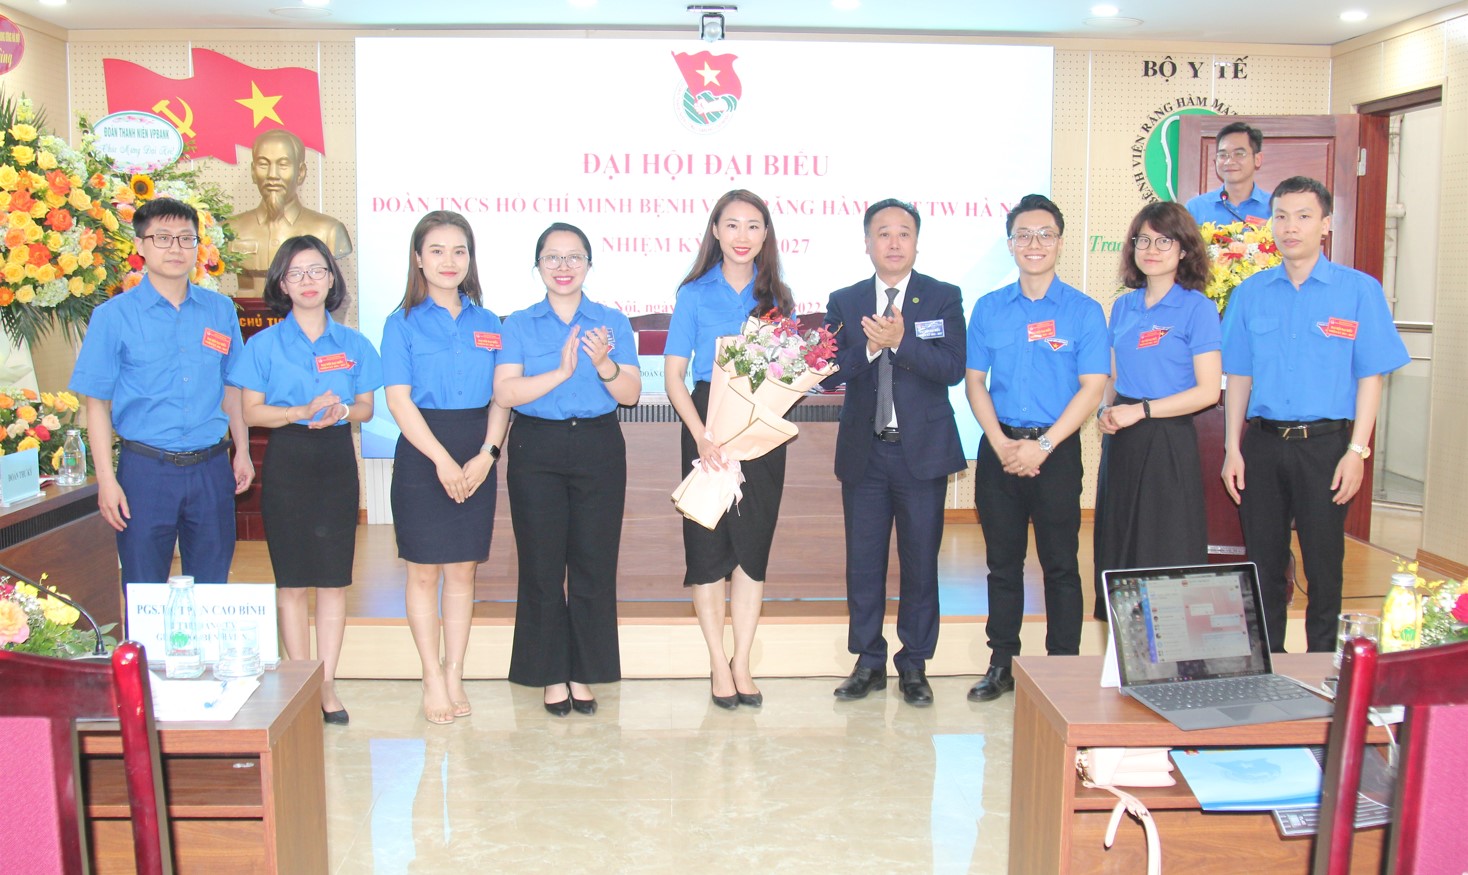 Bí thư Đảng ủy, Giám đốc bệnh viện Trần Cao Bính tặng hoa chúc mừng BCH Đoàn TNCS HCM bệnh viện khóa 2022-2027